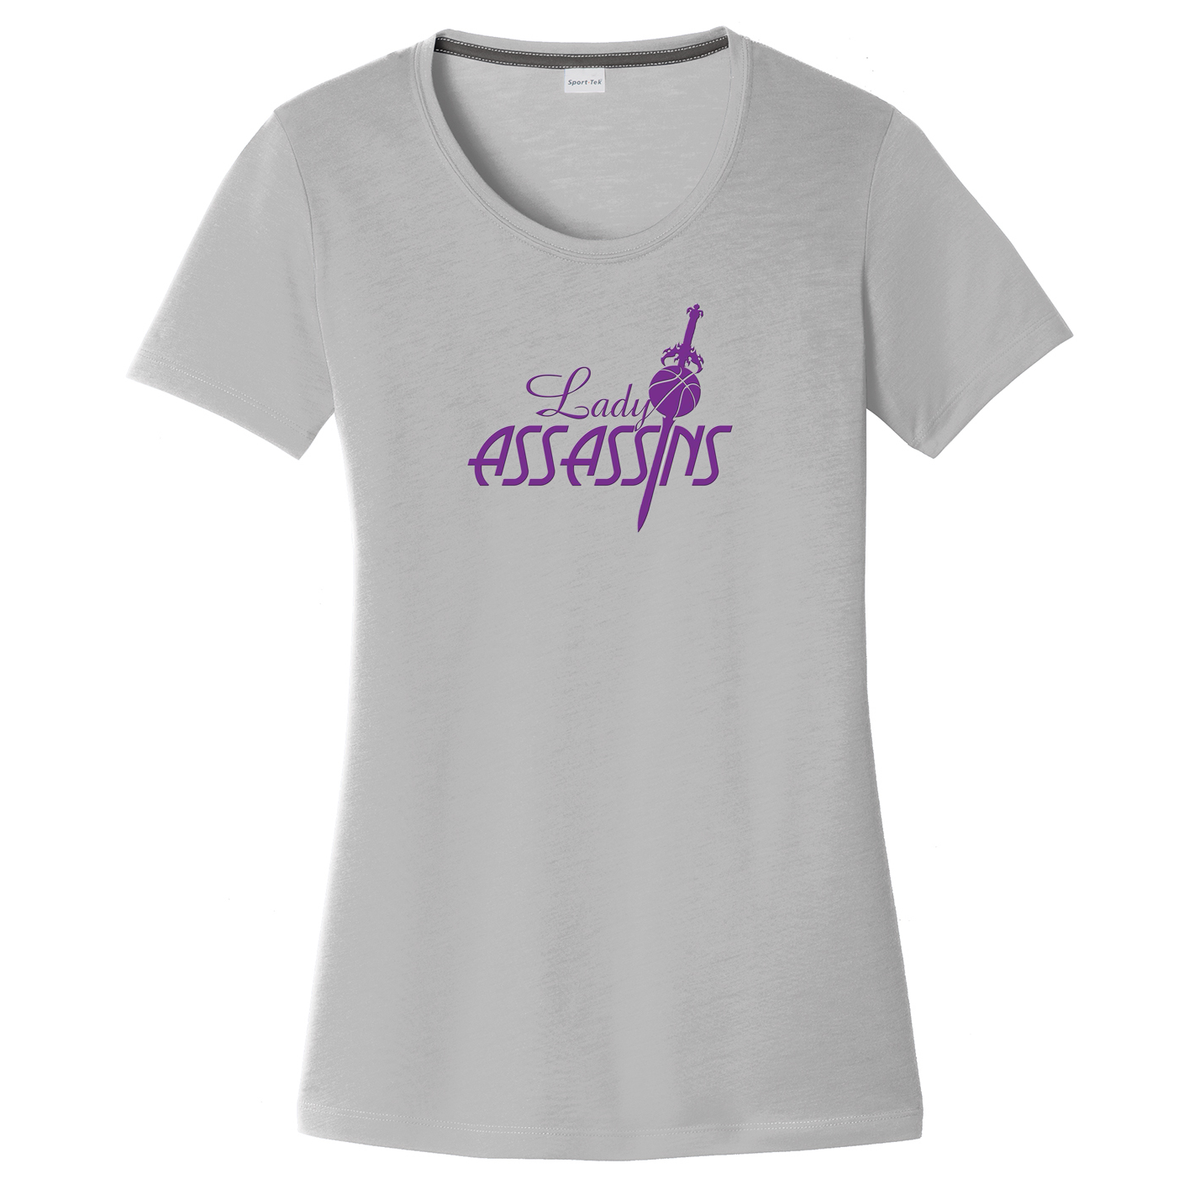 Lady Assassins Basketball Women's CottonTouch Performance T-Shirt